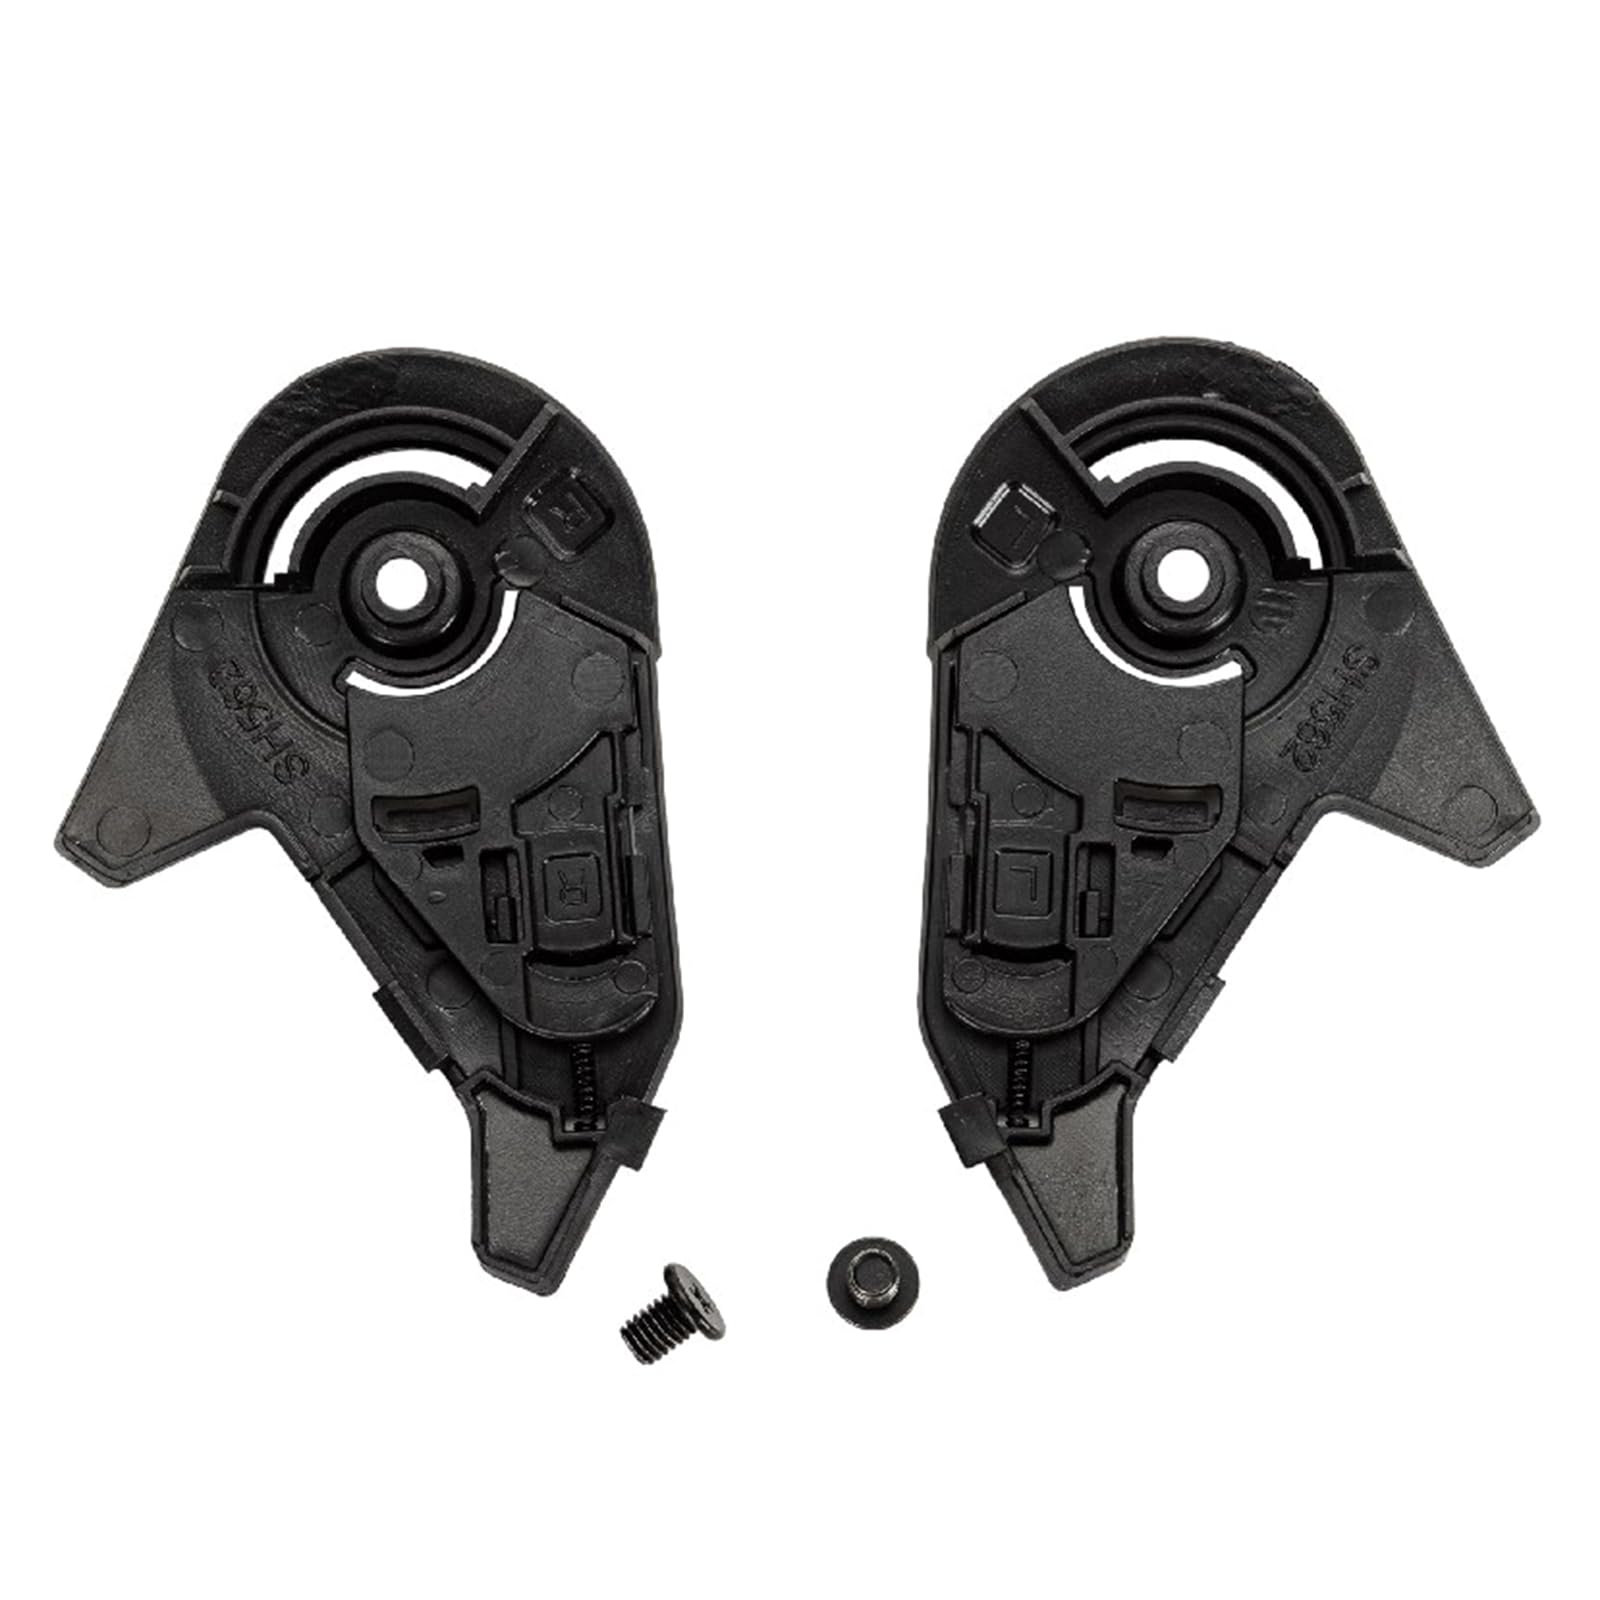 Helmschild Basis mit Schrauben Helmzubehör für Schaft 562 Ersatzmechanismus Basis Helmhalterung Basis von Qsvbeeqj